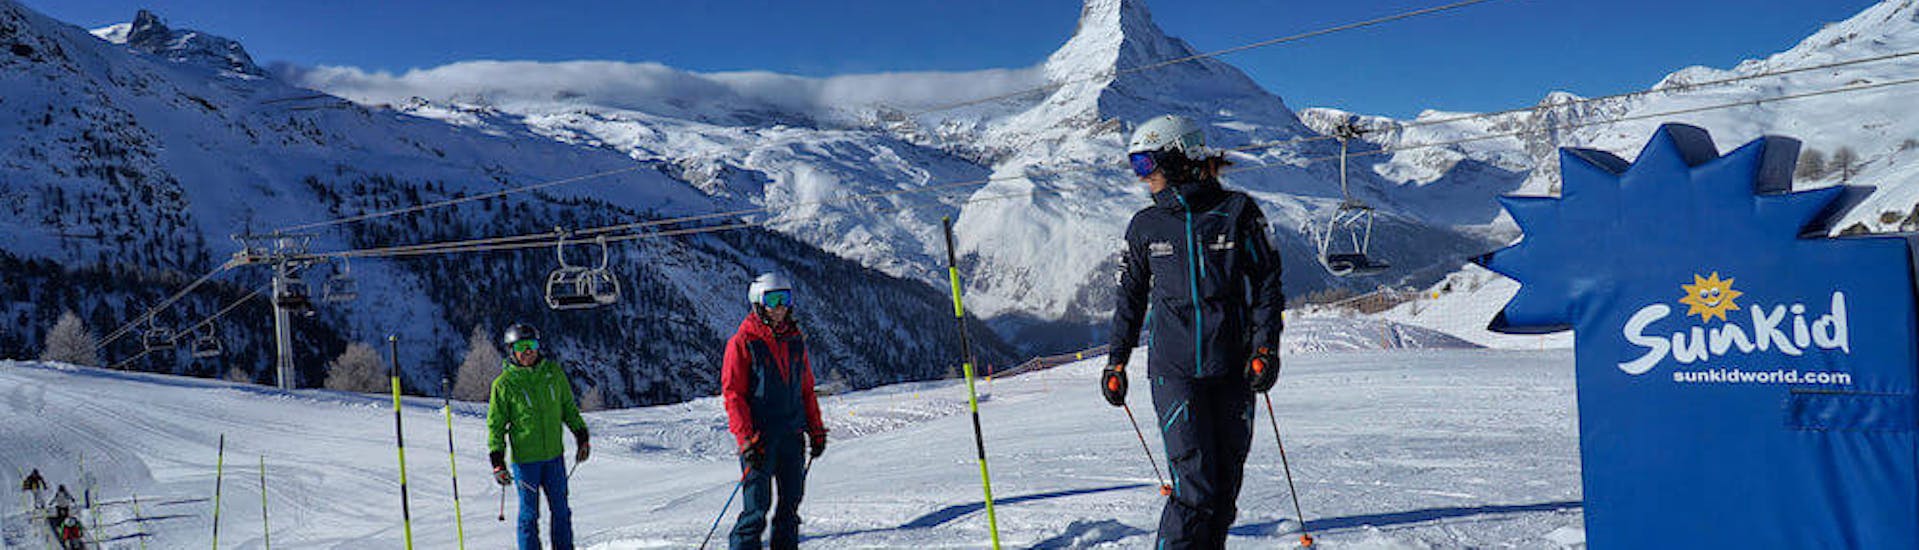 Un instructor de esquí con algunos alumnos subiendo a la alfombra mágica durante las clases particulares de esquí para principiantes - 3 días, con Stocked Snowsports School Zermatt.